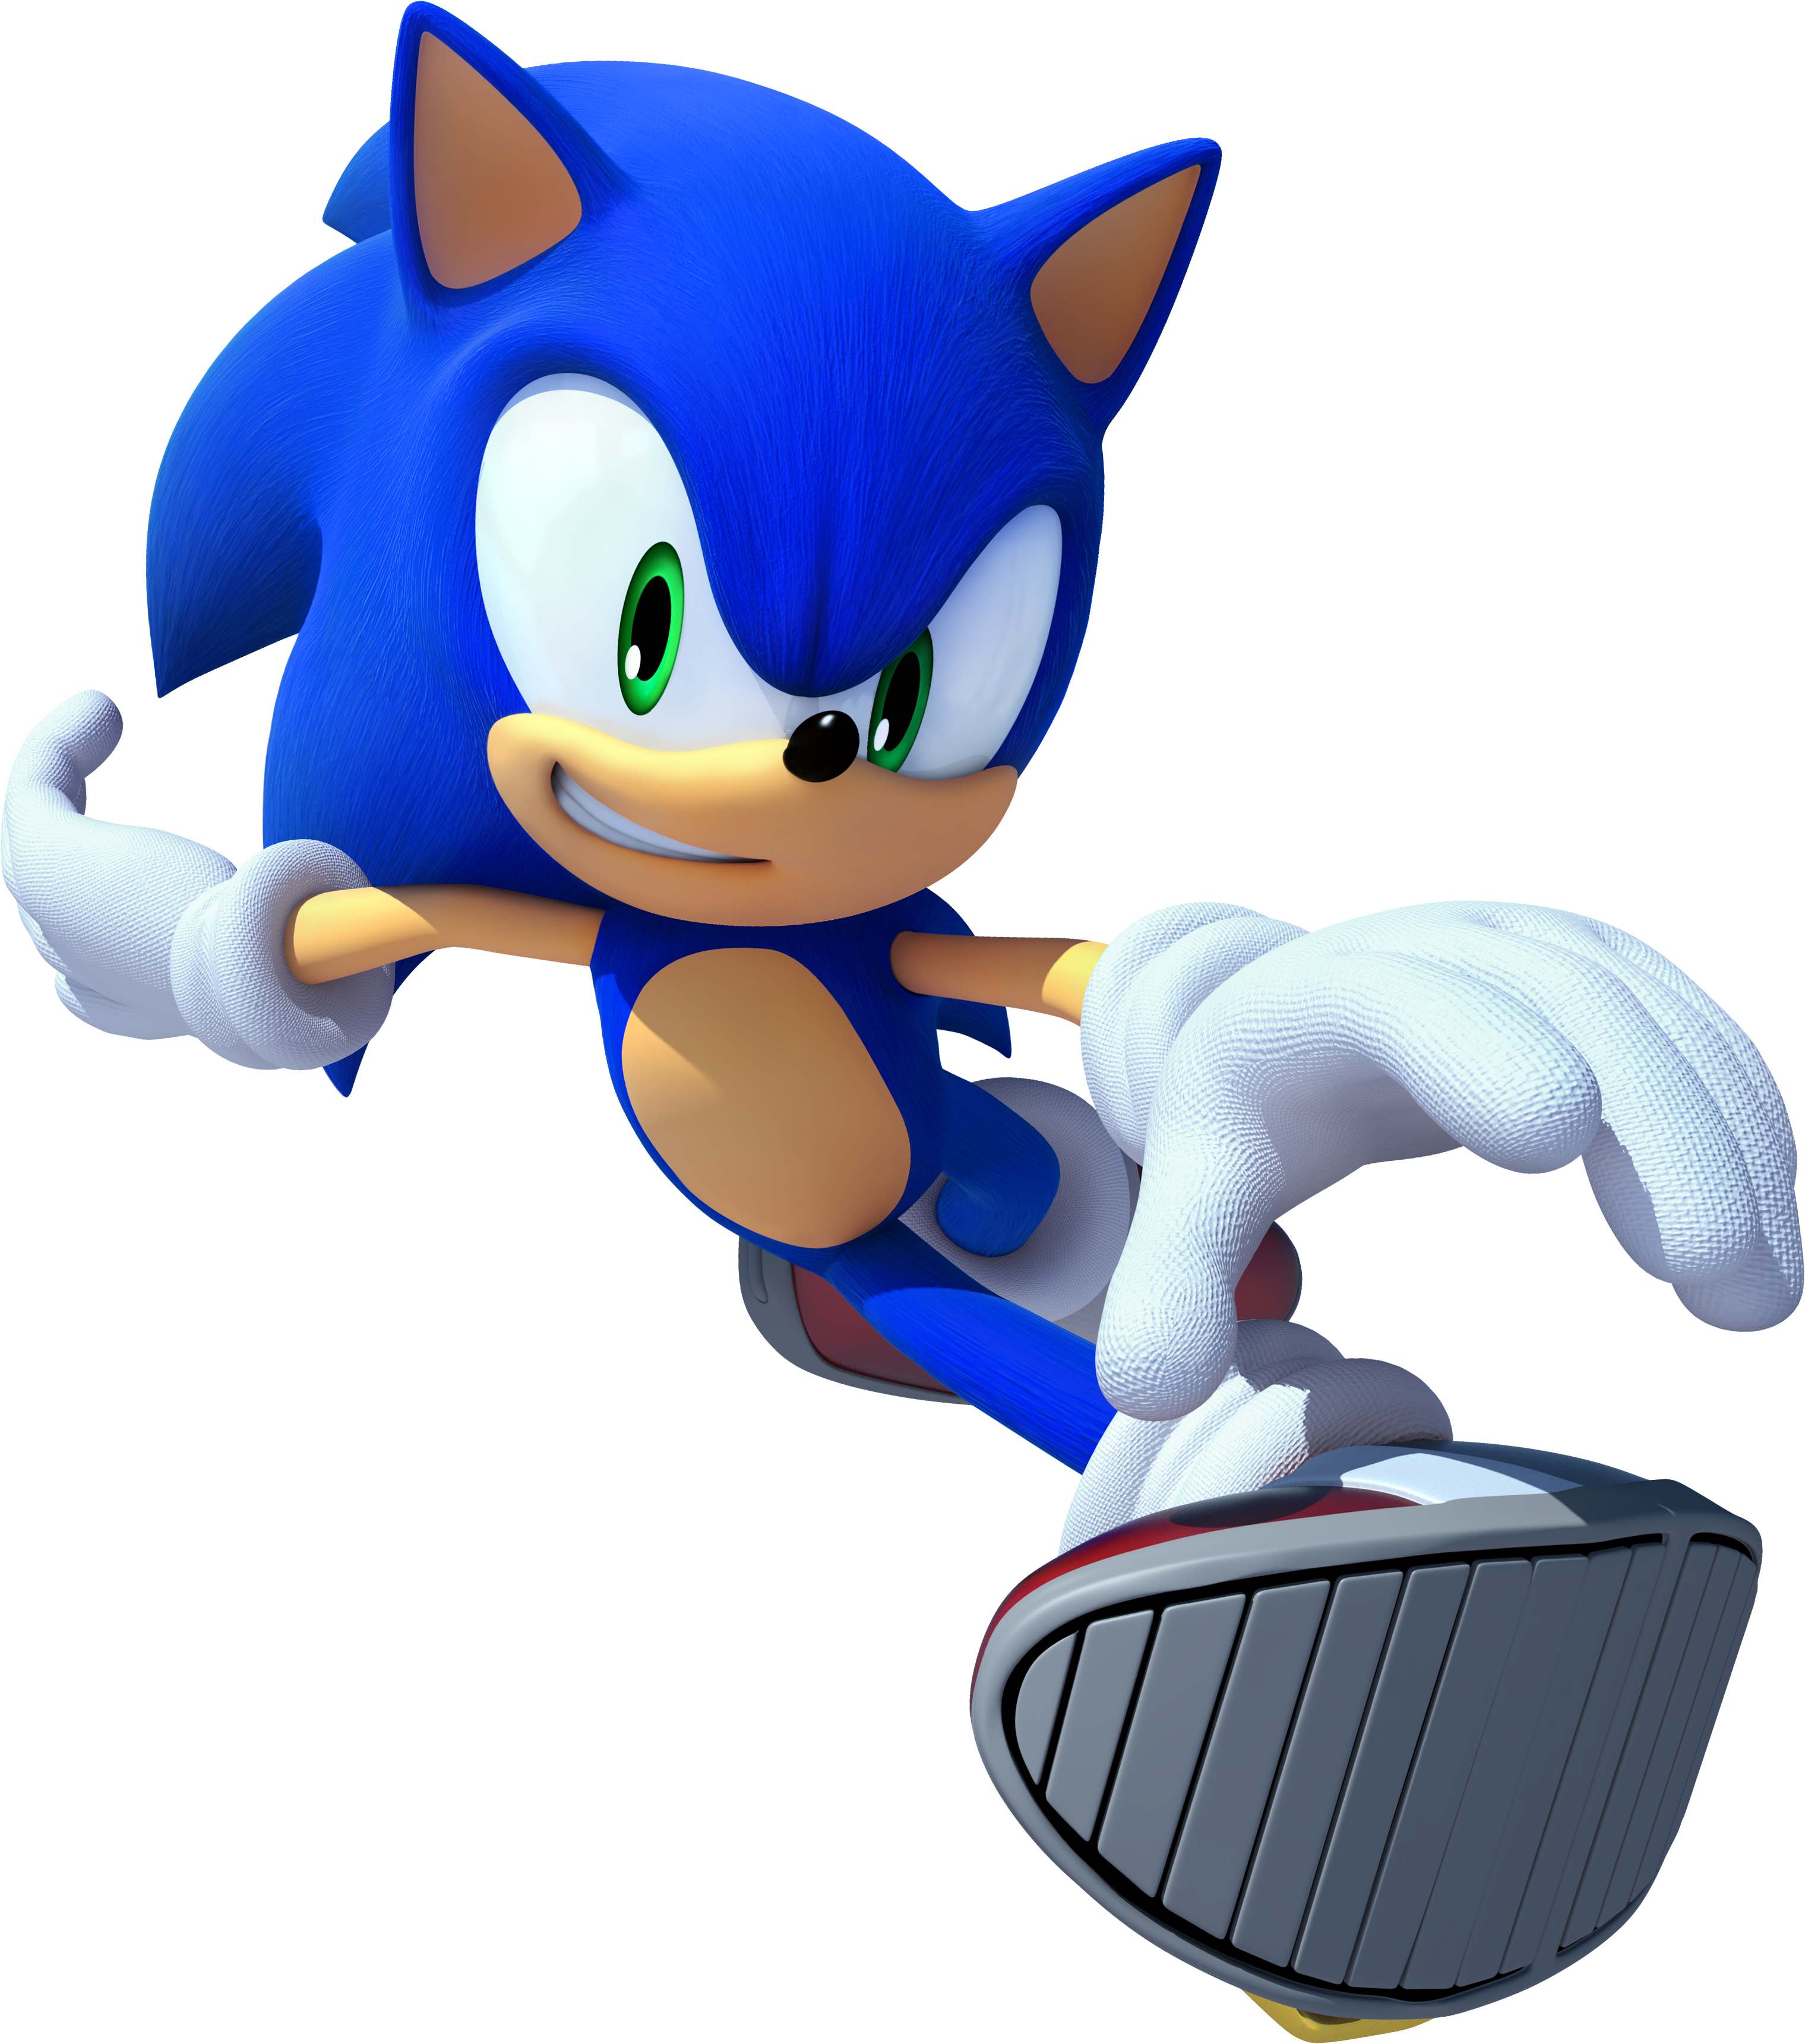 Sonic the Hedgehog 4: Episode II - ABC ME